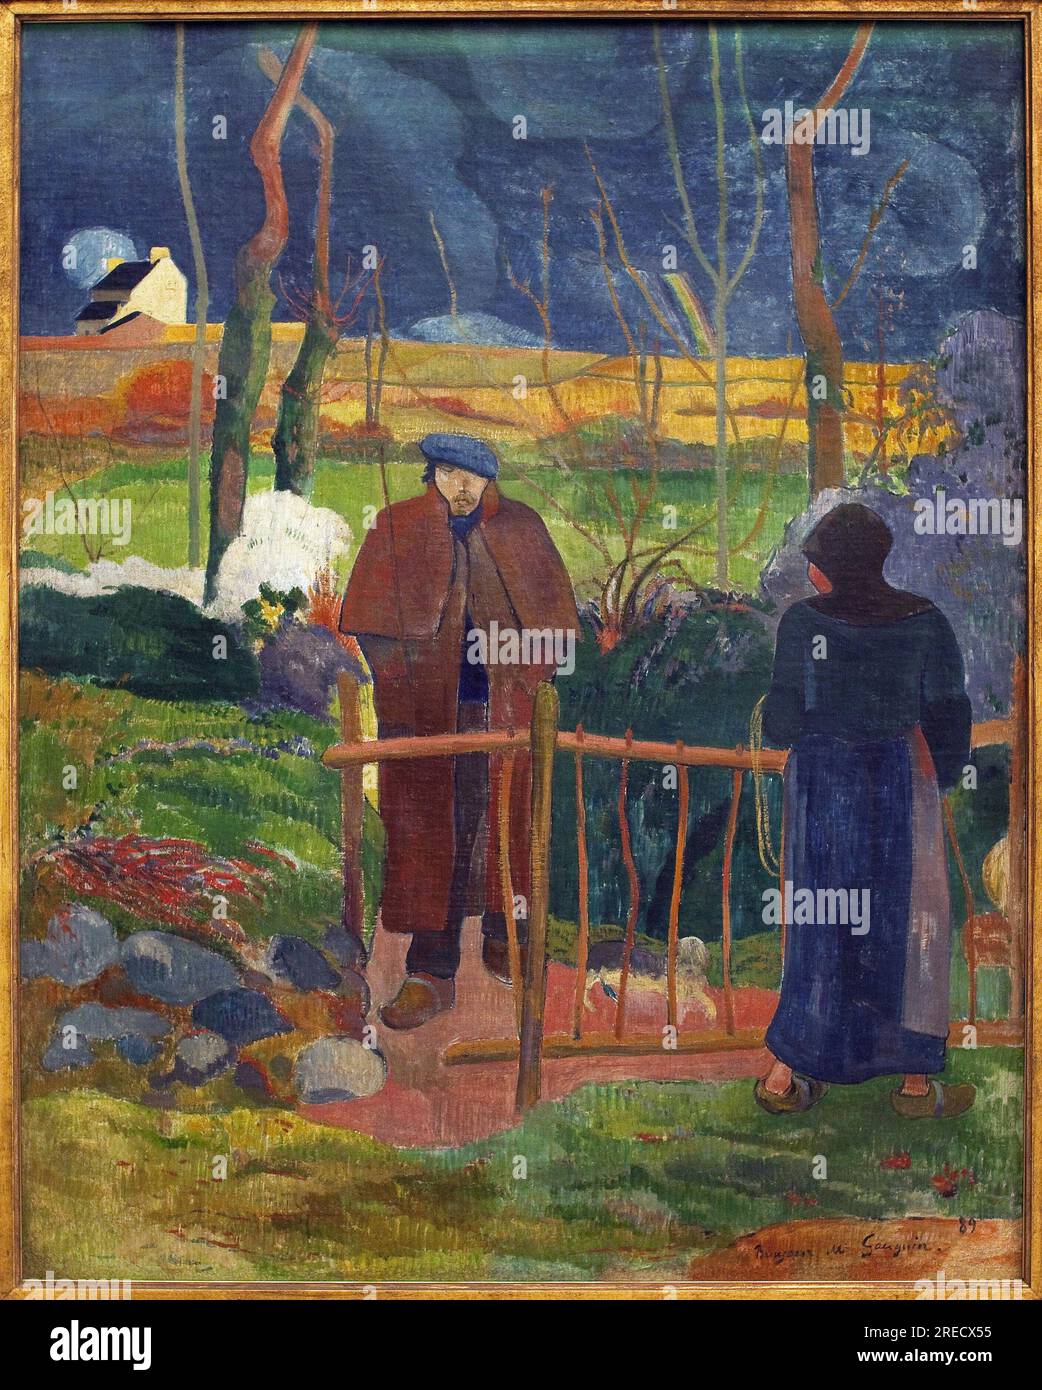 Bonjour, Monsieur Gauguin. Le tableau a ete execute lors d'un sejour a le Pouldu (Finistere), en automne 1889, avec plusieurs autres Artistes, Gauguin a decore la salle a manger de Mademoiselle Henry. CET autoportrait constituait le panneau inferieur de la porte, ce tableau en est une version agrandie et une allusion au tableau de Gustave Courbet (1819-1877), Bonjour Monsieur Courbet (1854). Peinture de Paul Gauguin (1848-1903), huile sur toile, 1889. Art francais, 19e siecle. Palais Veletrzni (palais des foires), Praga (Republique Tcheque). Foto Stock